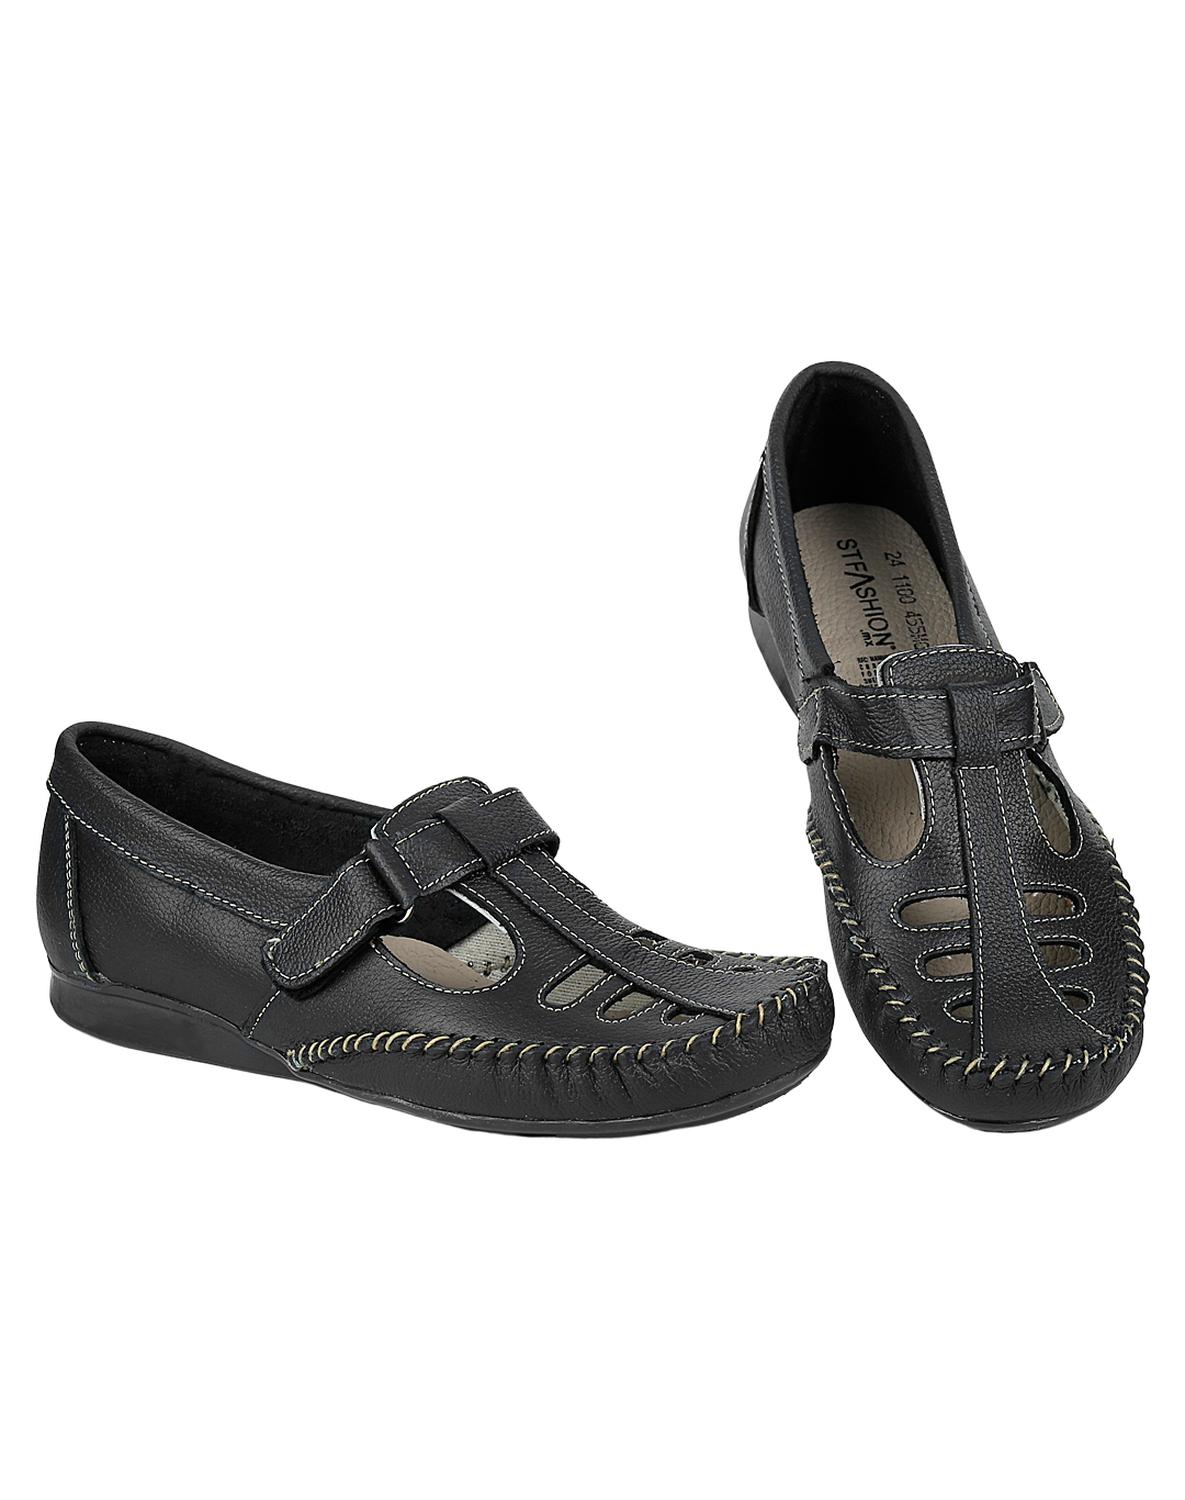 Zapato Confort Piso Mujer Negro Piel Hannia 08503700